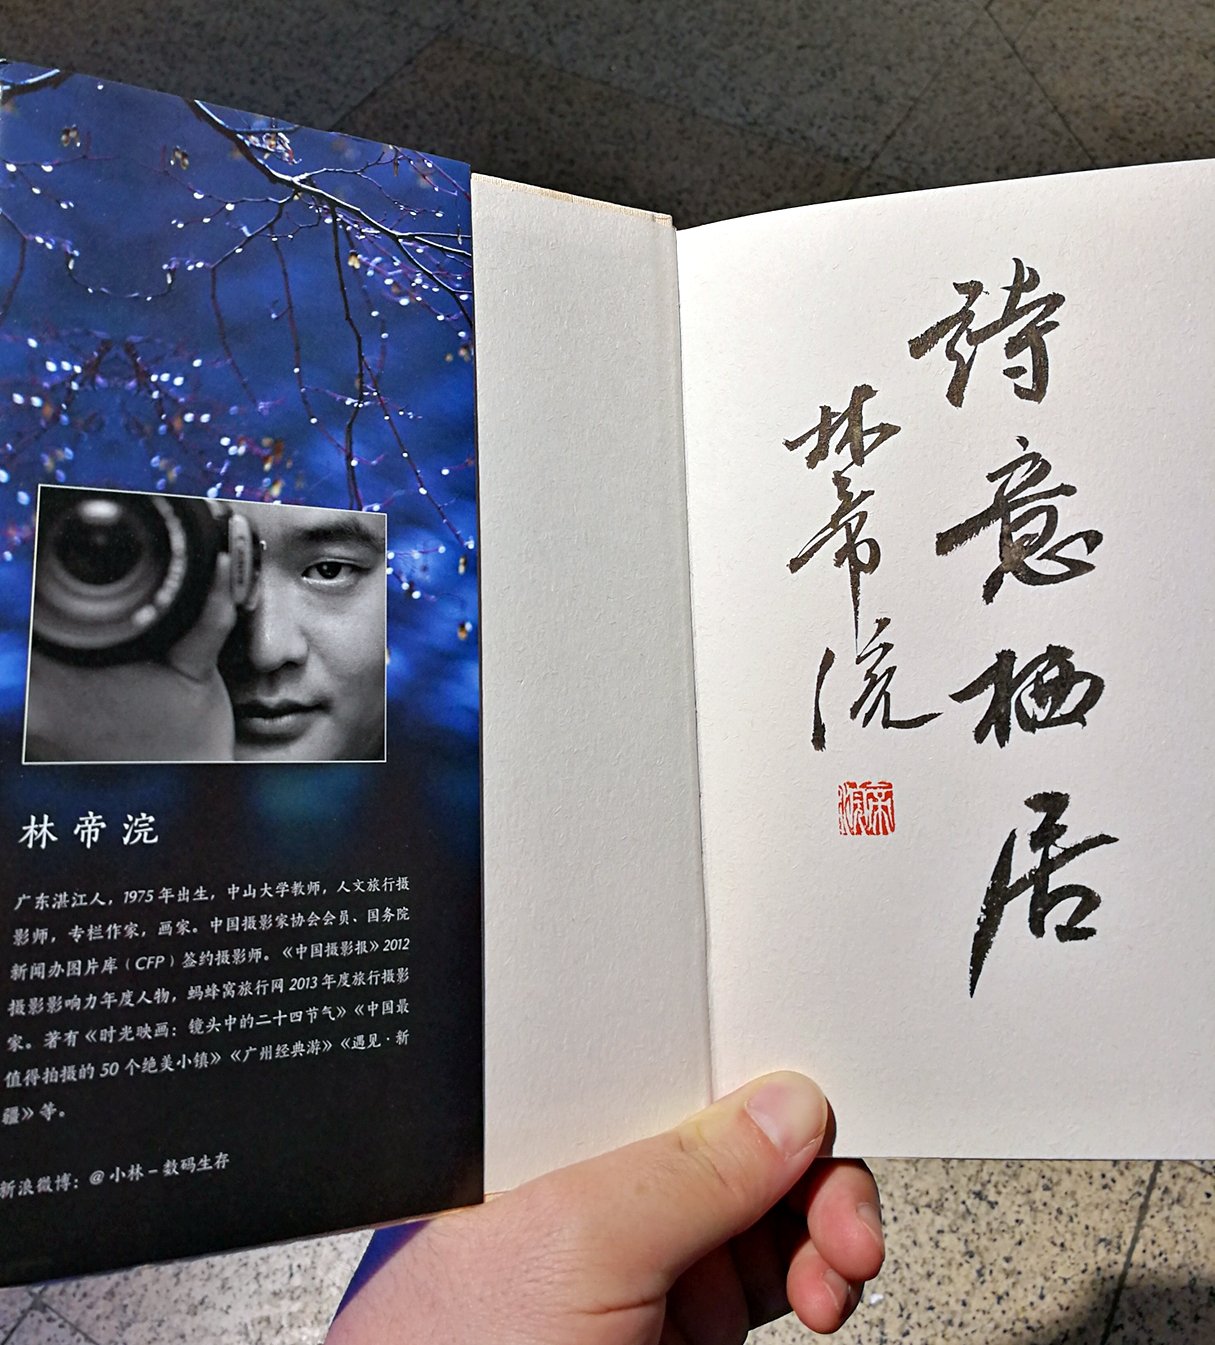 大名鼎鼎的小林老师的大作，特意提前买好参加他在广州购书中心的见面会，也得到他亲笔签名，相当开心！